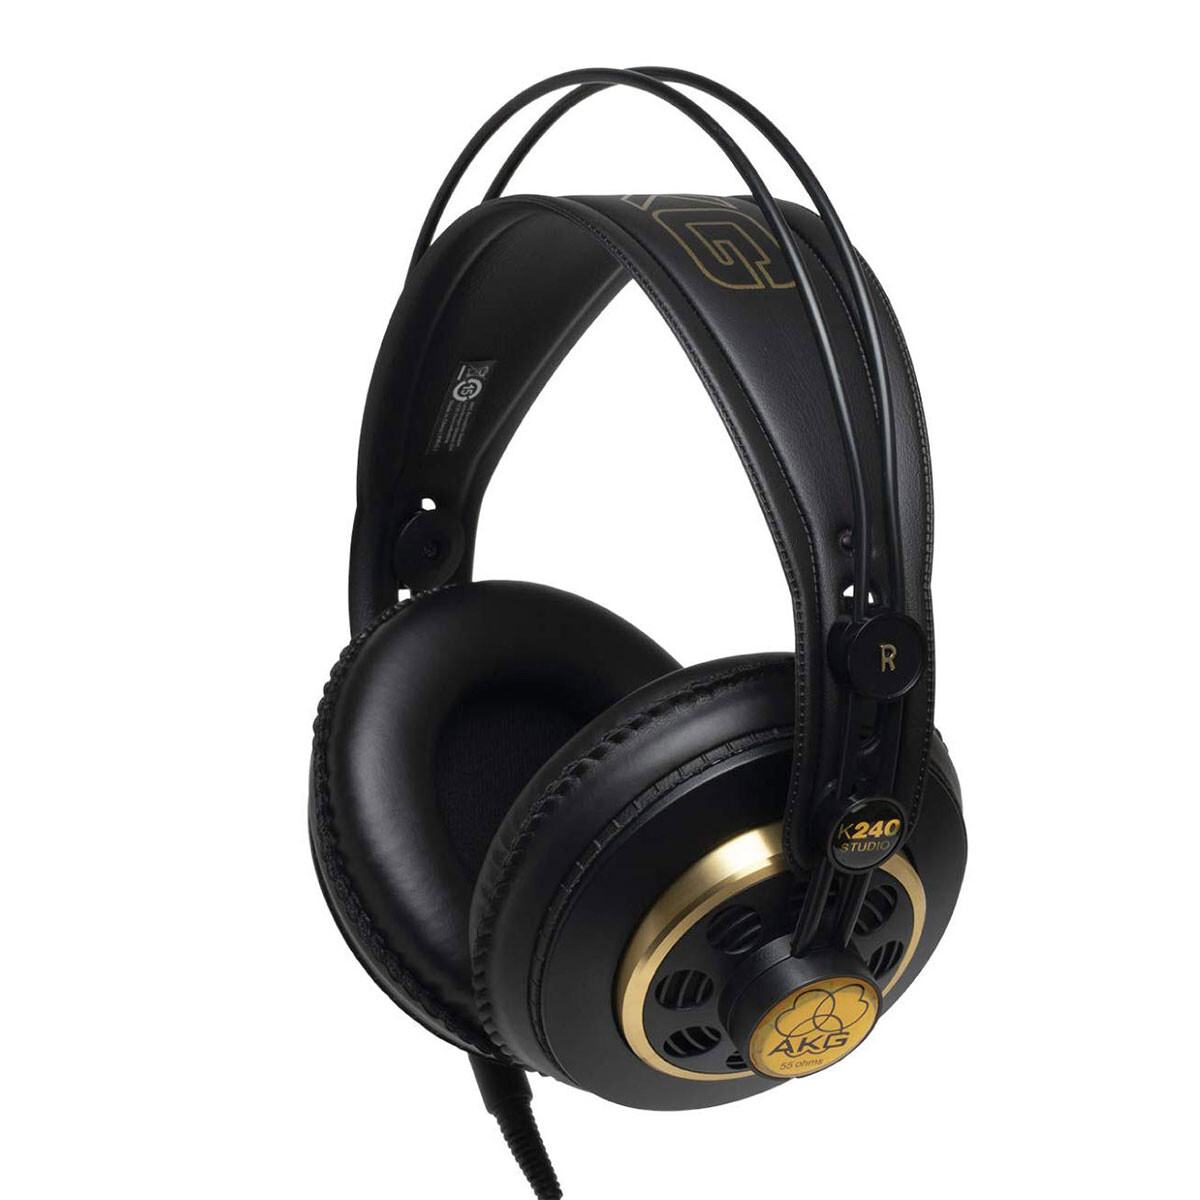 K-3003: nuevos auriculares in-ear de AKG para profesionales exigentes